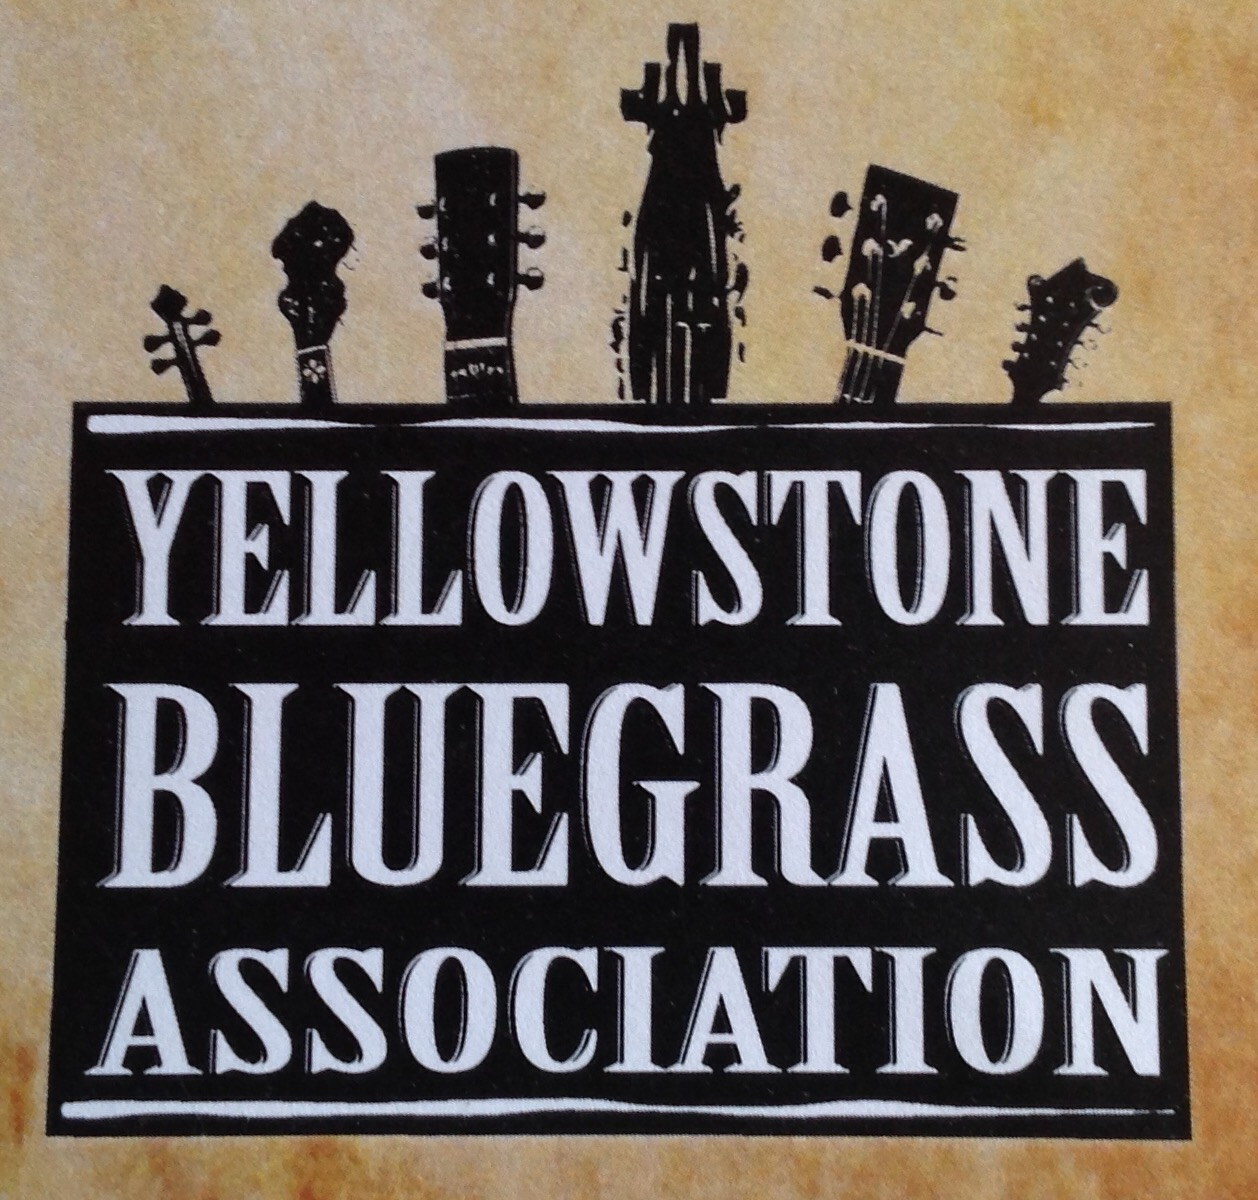 Yellowstone Bluegrass Association